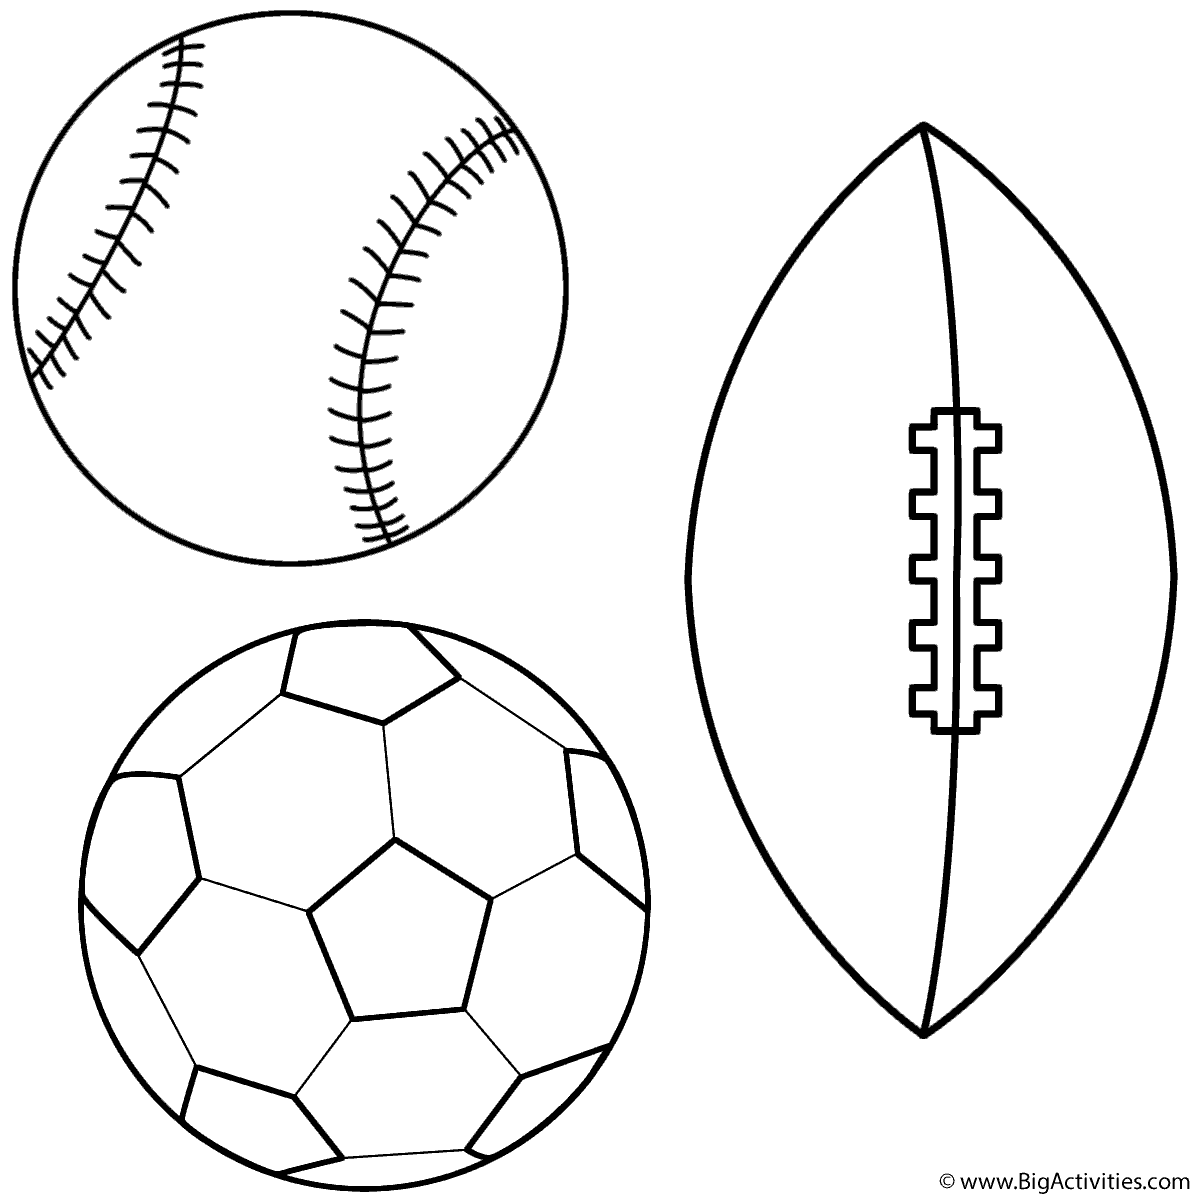 Baseball soccer ball and football